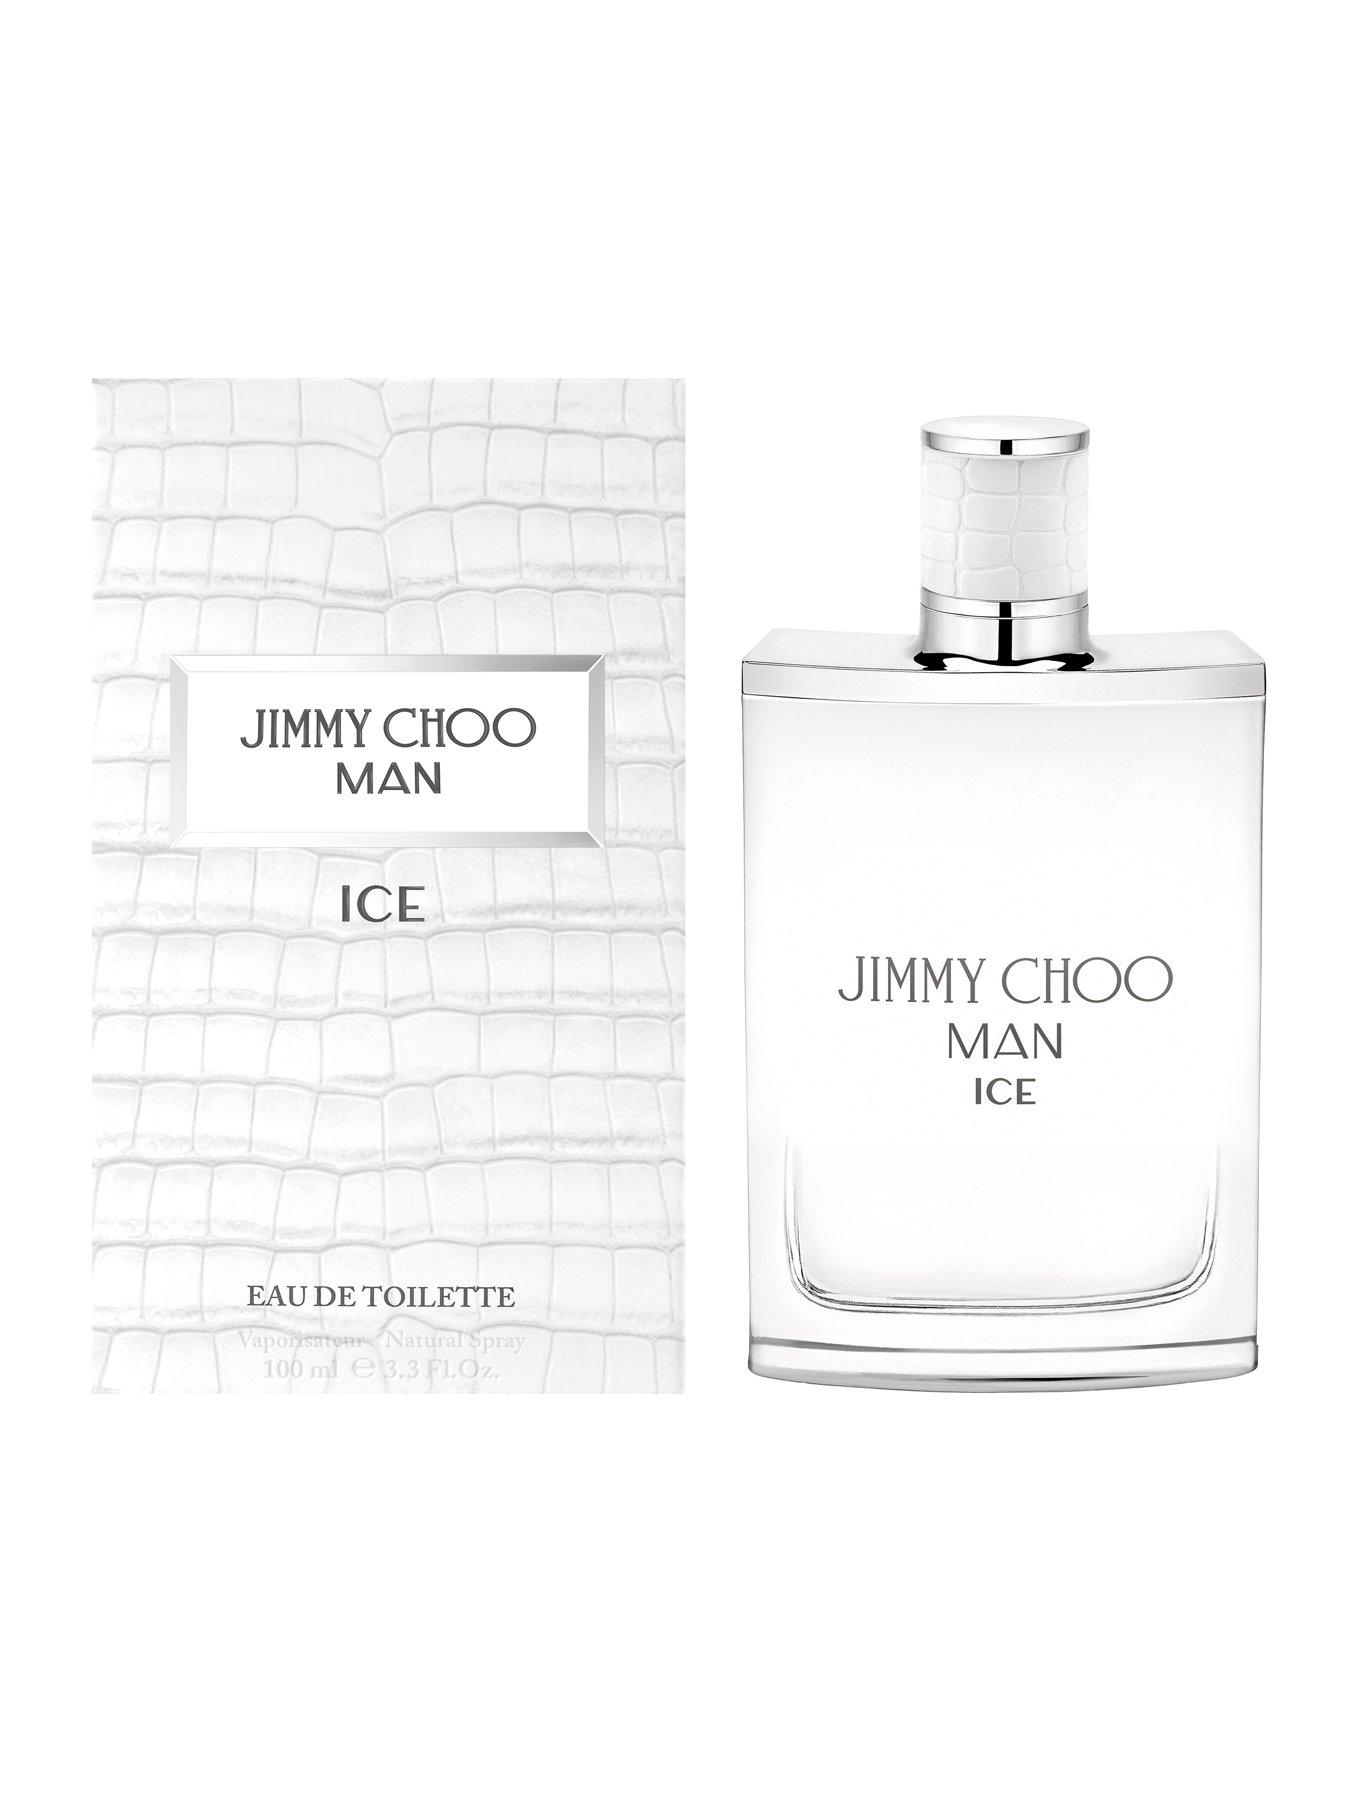 Jimmy Choo Man Ice Eau de Toilette 100ml | Very.co.uk